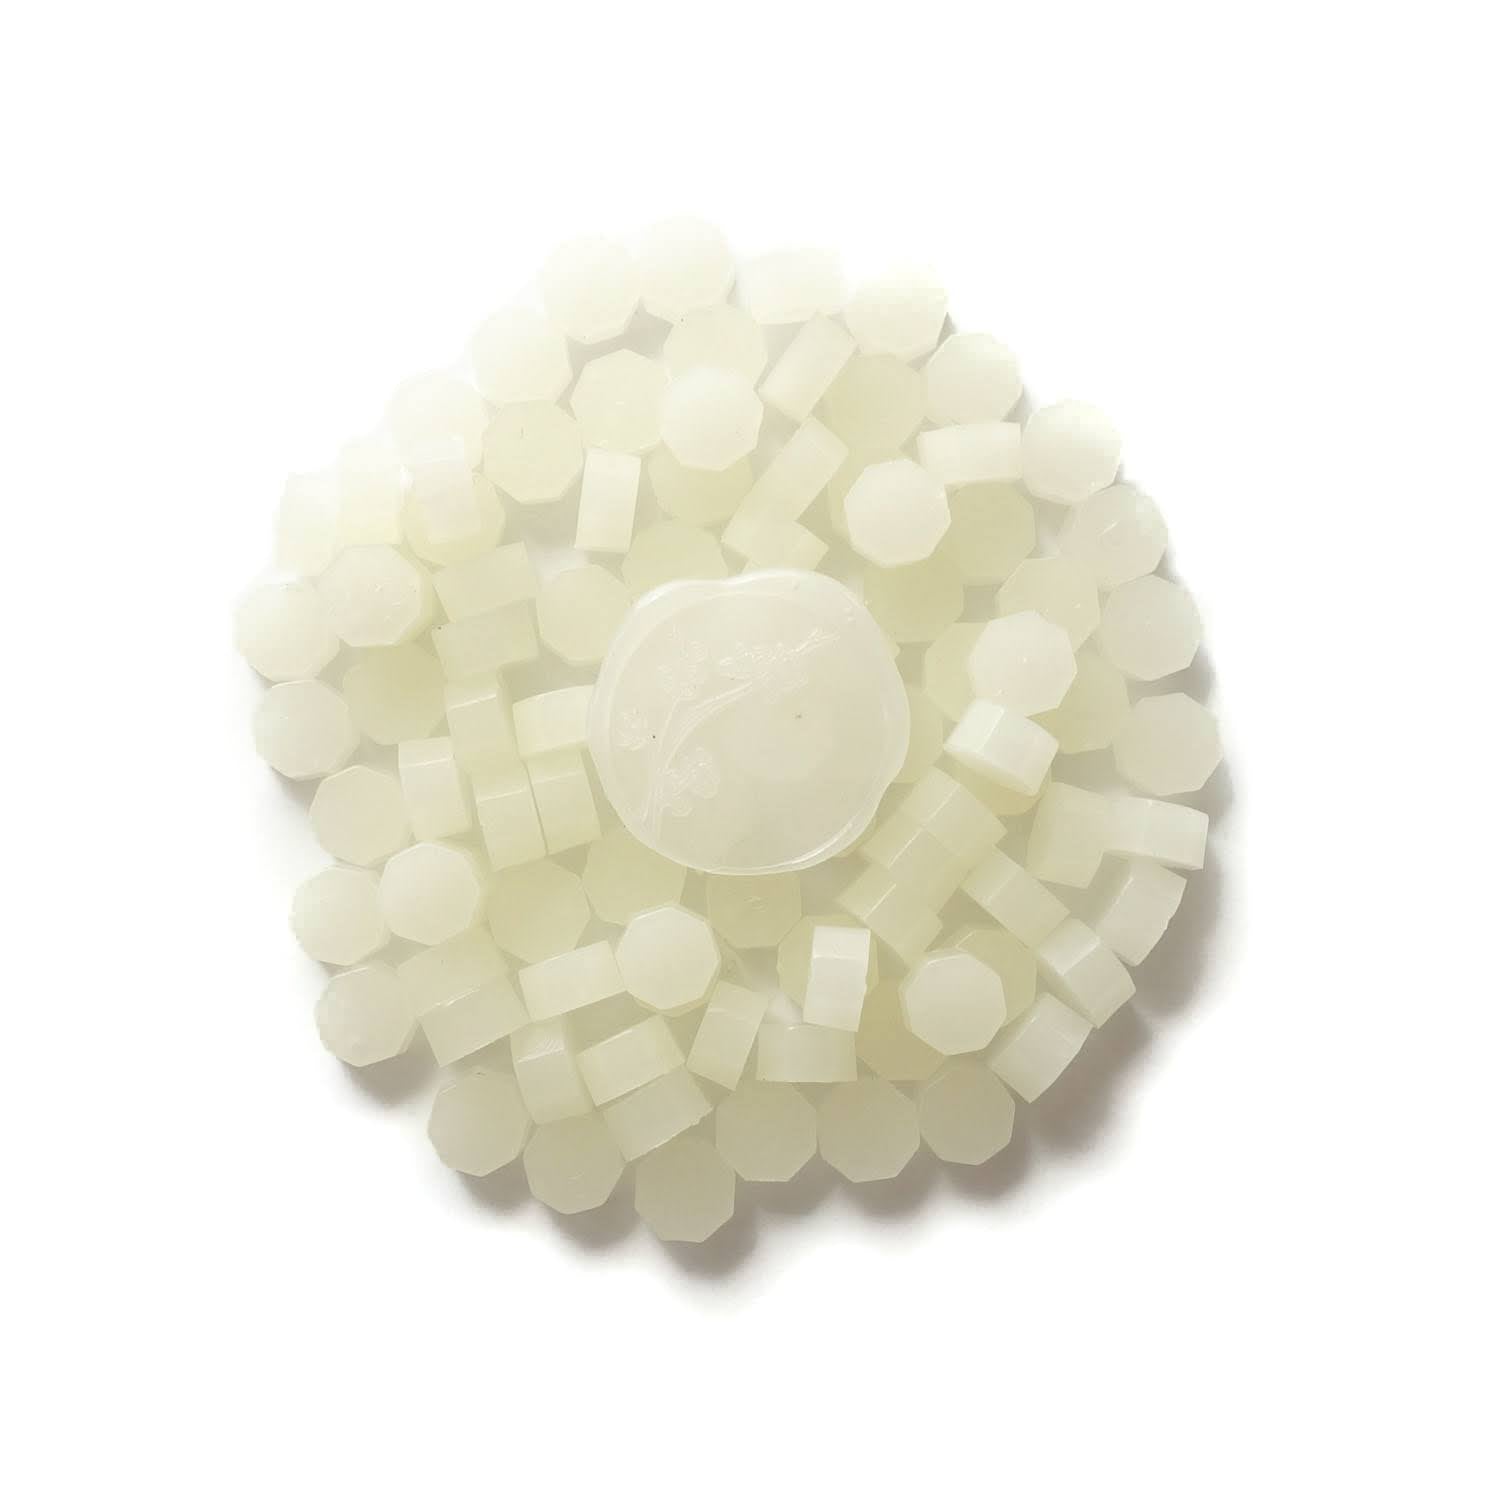 Wax Beads - Wax Pearls Flexiwax Crystal Orange 200 gram sample